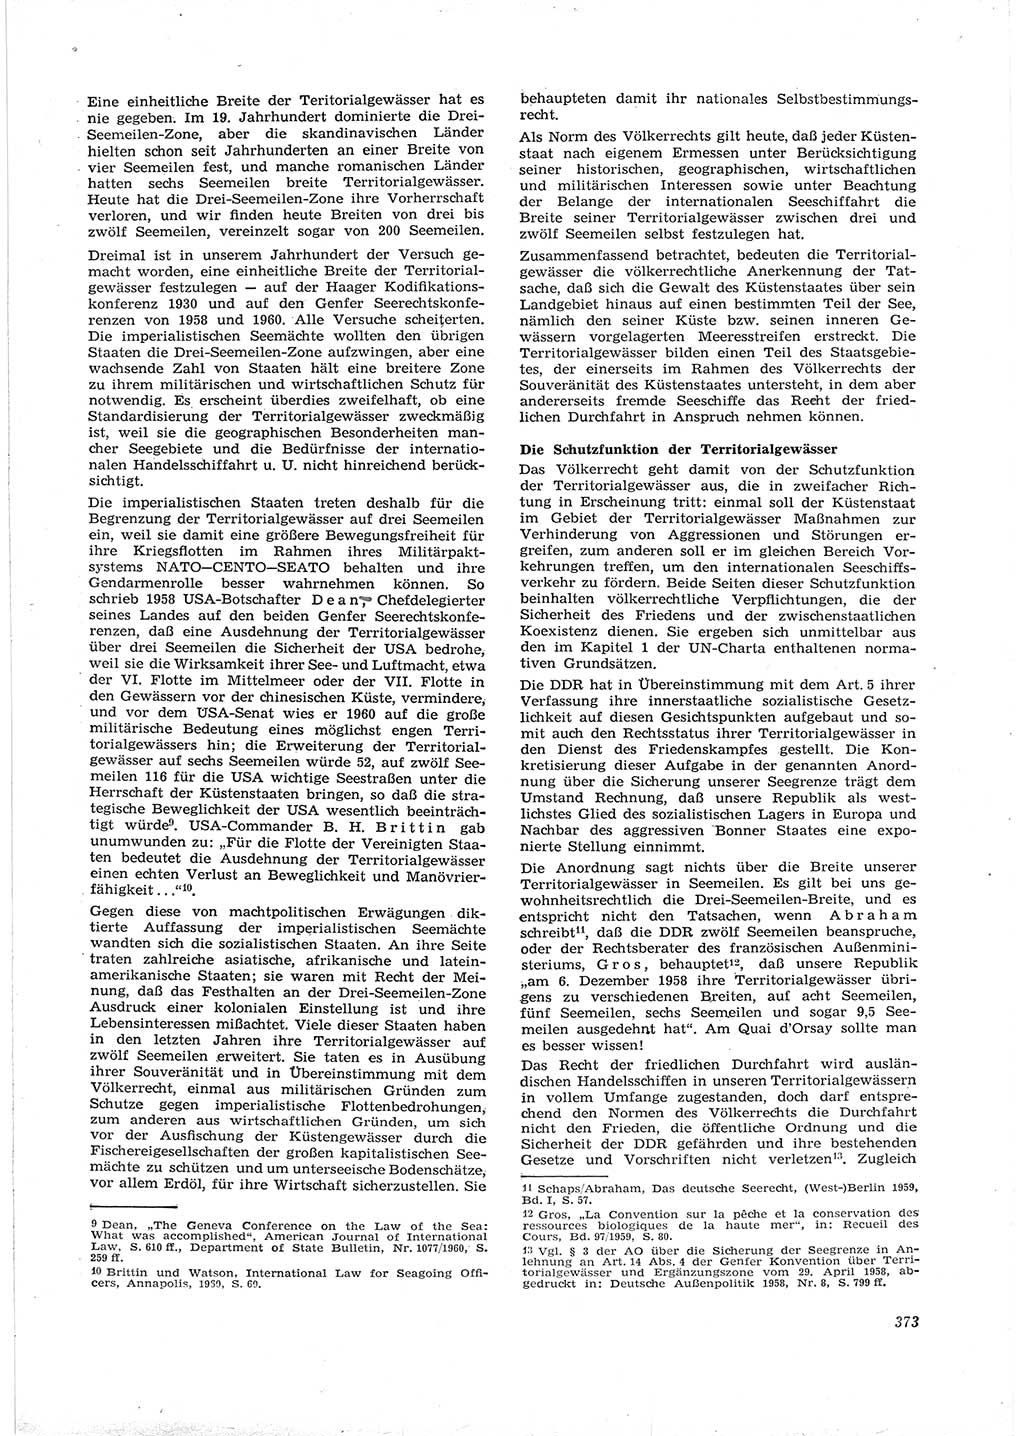 Neue Justiz (NJ), Zeitschrift für Recht und Rechtswissenschaft [Deutsche Demokratische Republik (DDR)], 16. Jahrgang 1962, Seite 373 (NJ DDR 1962, S. 373)